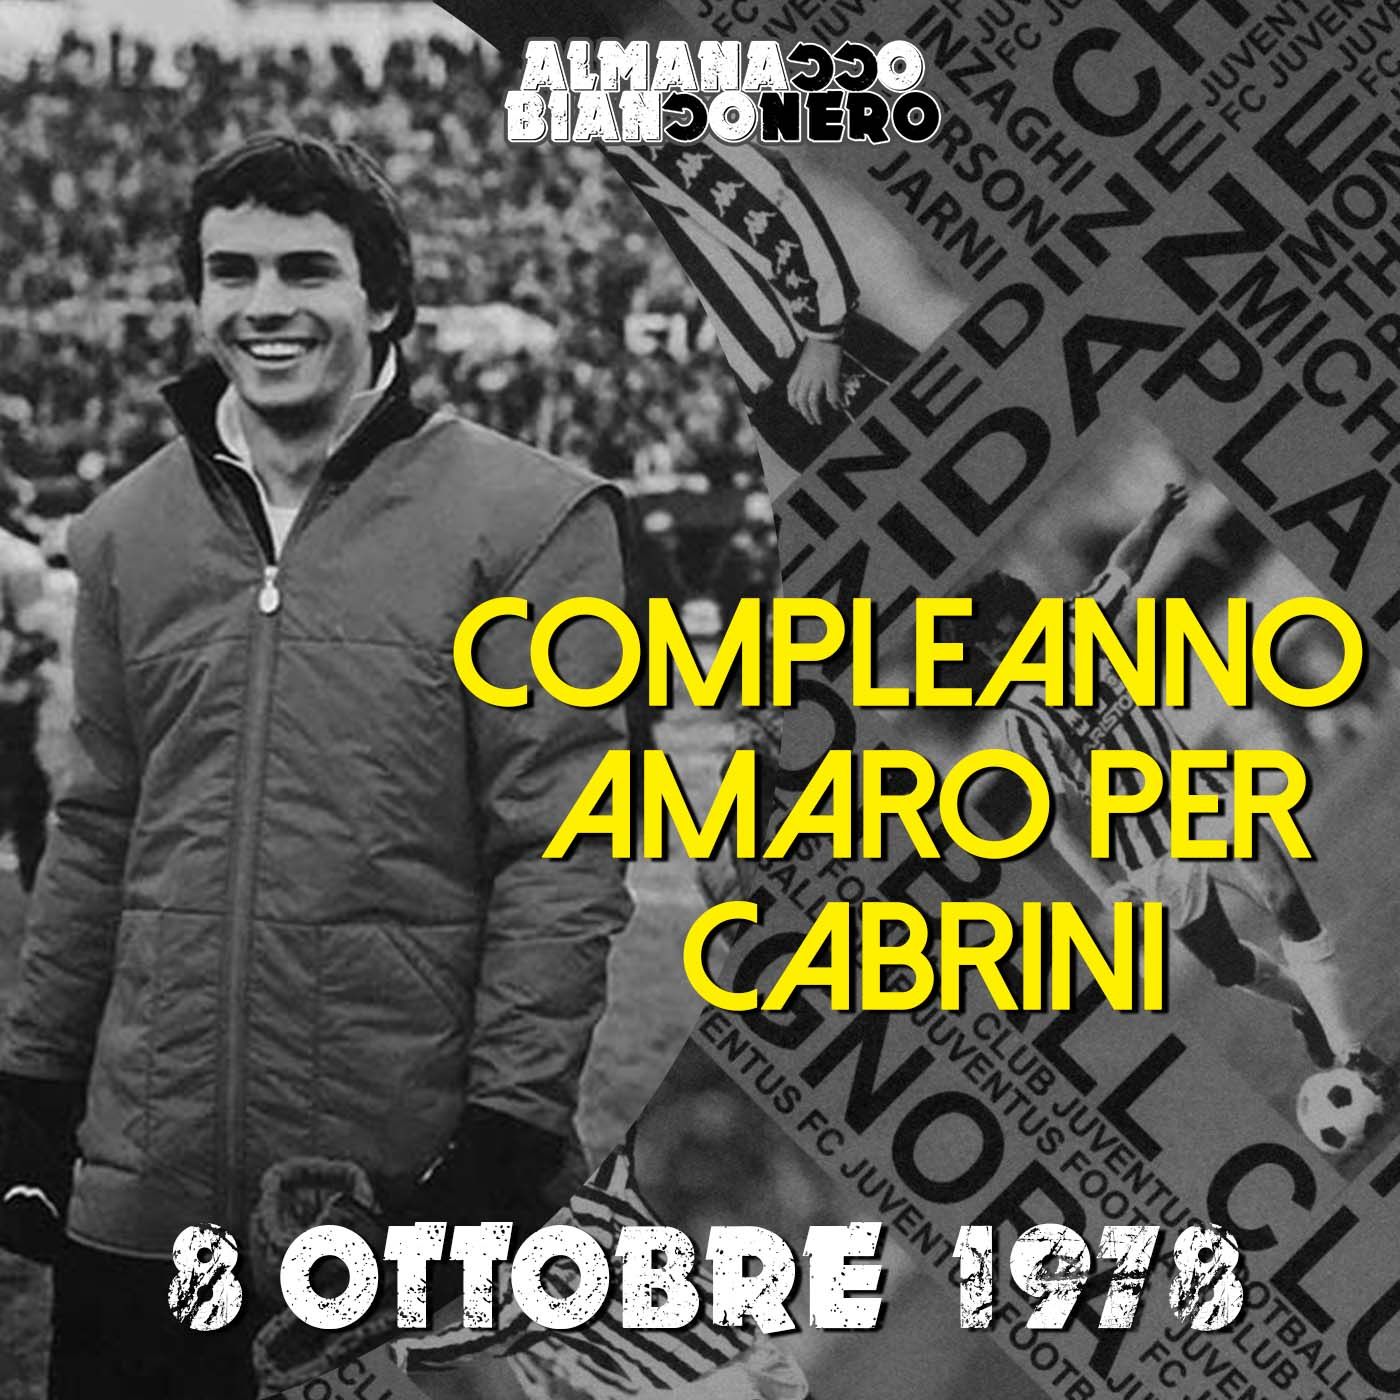 8 ottobre 1978 - Compleanno amaro per Cabrini